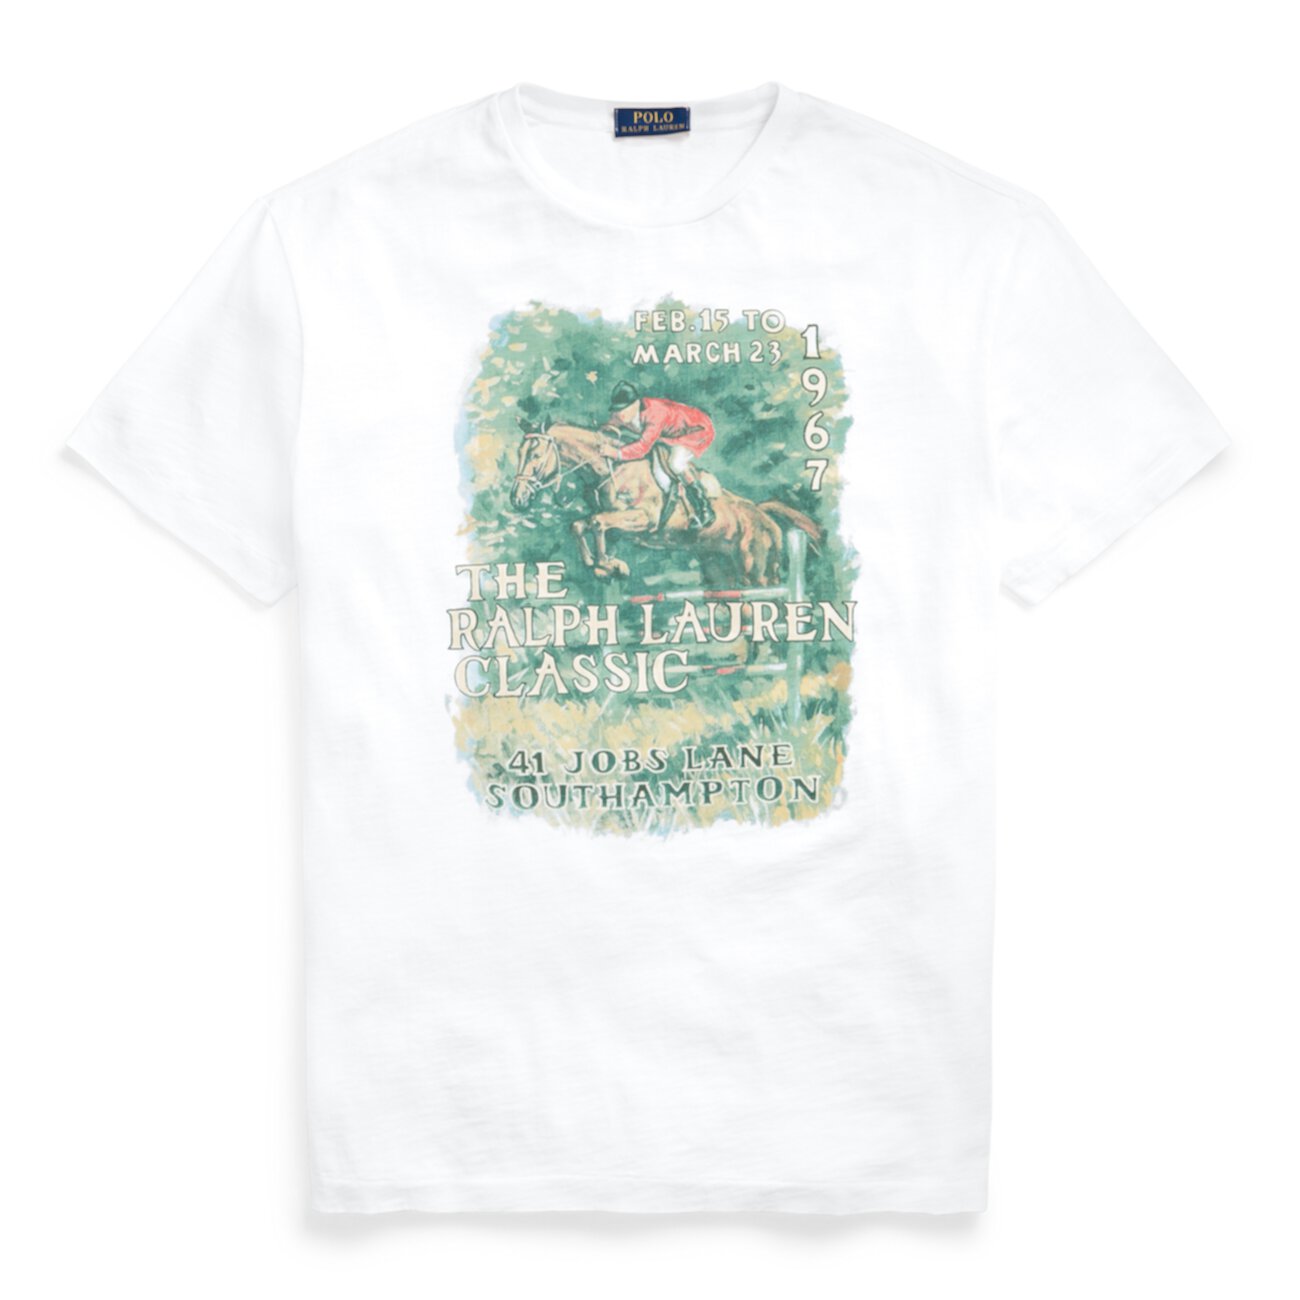 Классическая футболка из джерси с графическим рисунком Ralph Lauren